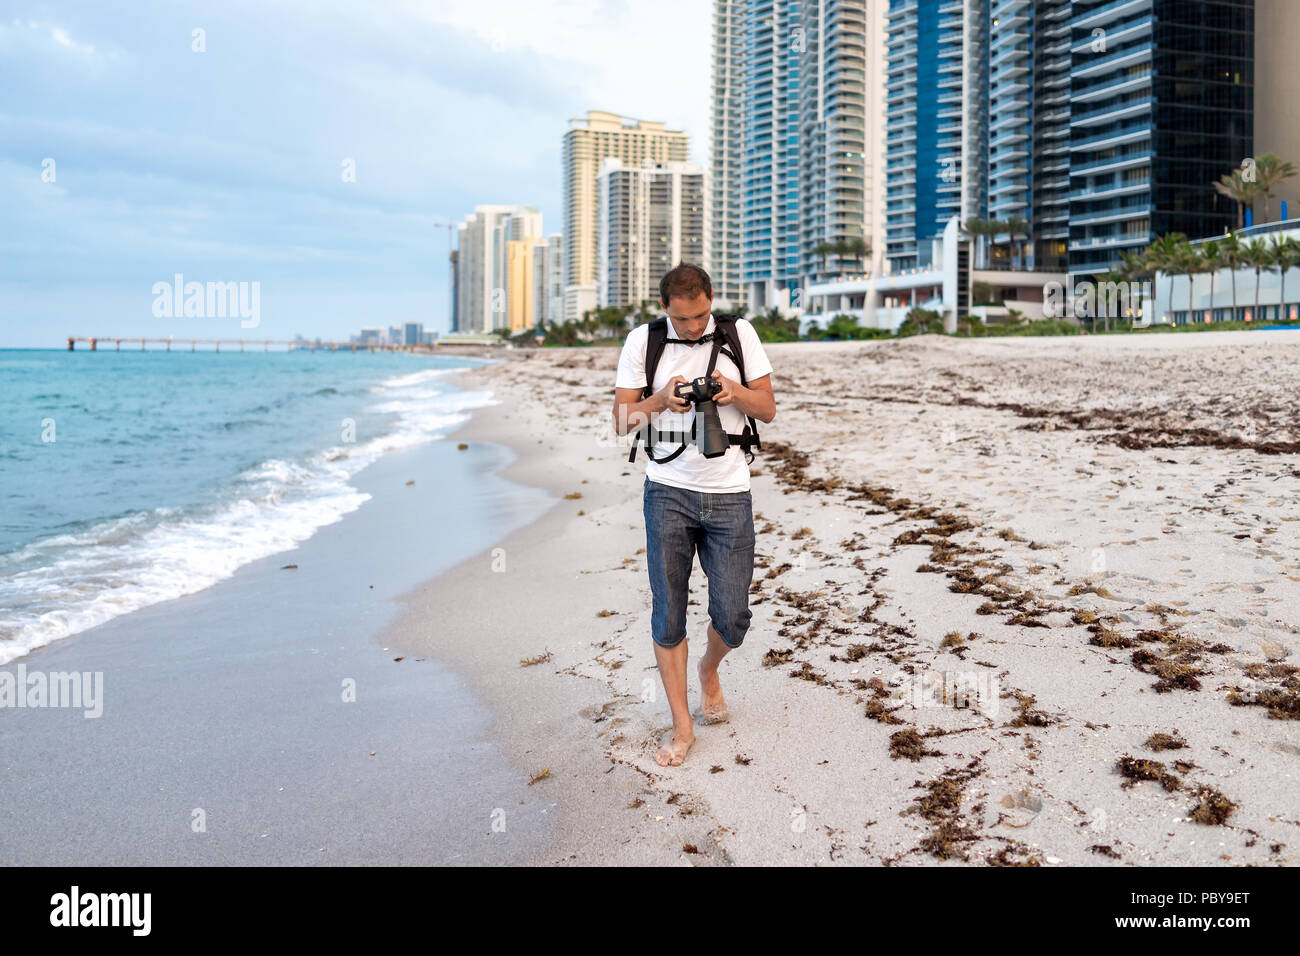 Sunny Isles Beach Gebäude während des Abend in Miami, Florida, mit Sand,  Pier, Ufer Küste, Menschen Person Fotograf Mann mit Kamera Stockfotografie  - Alamy